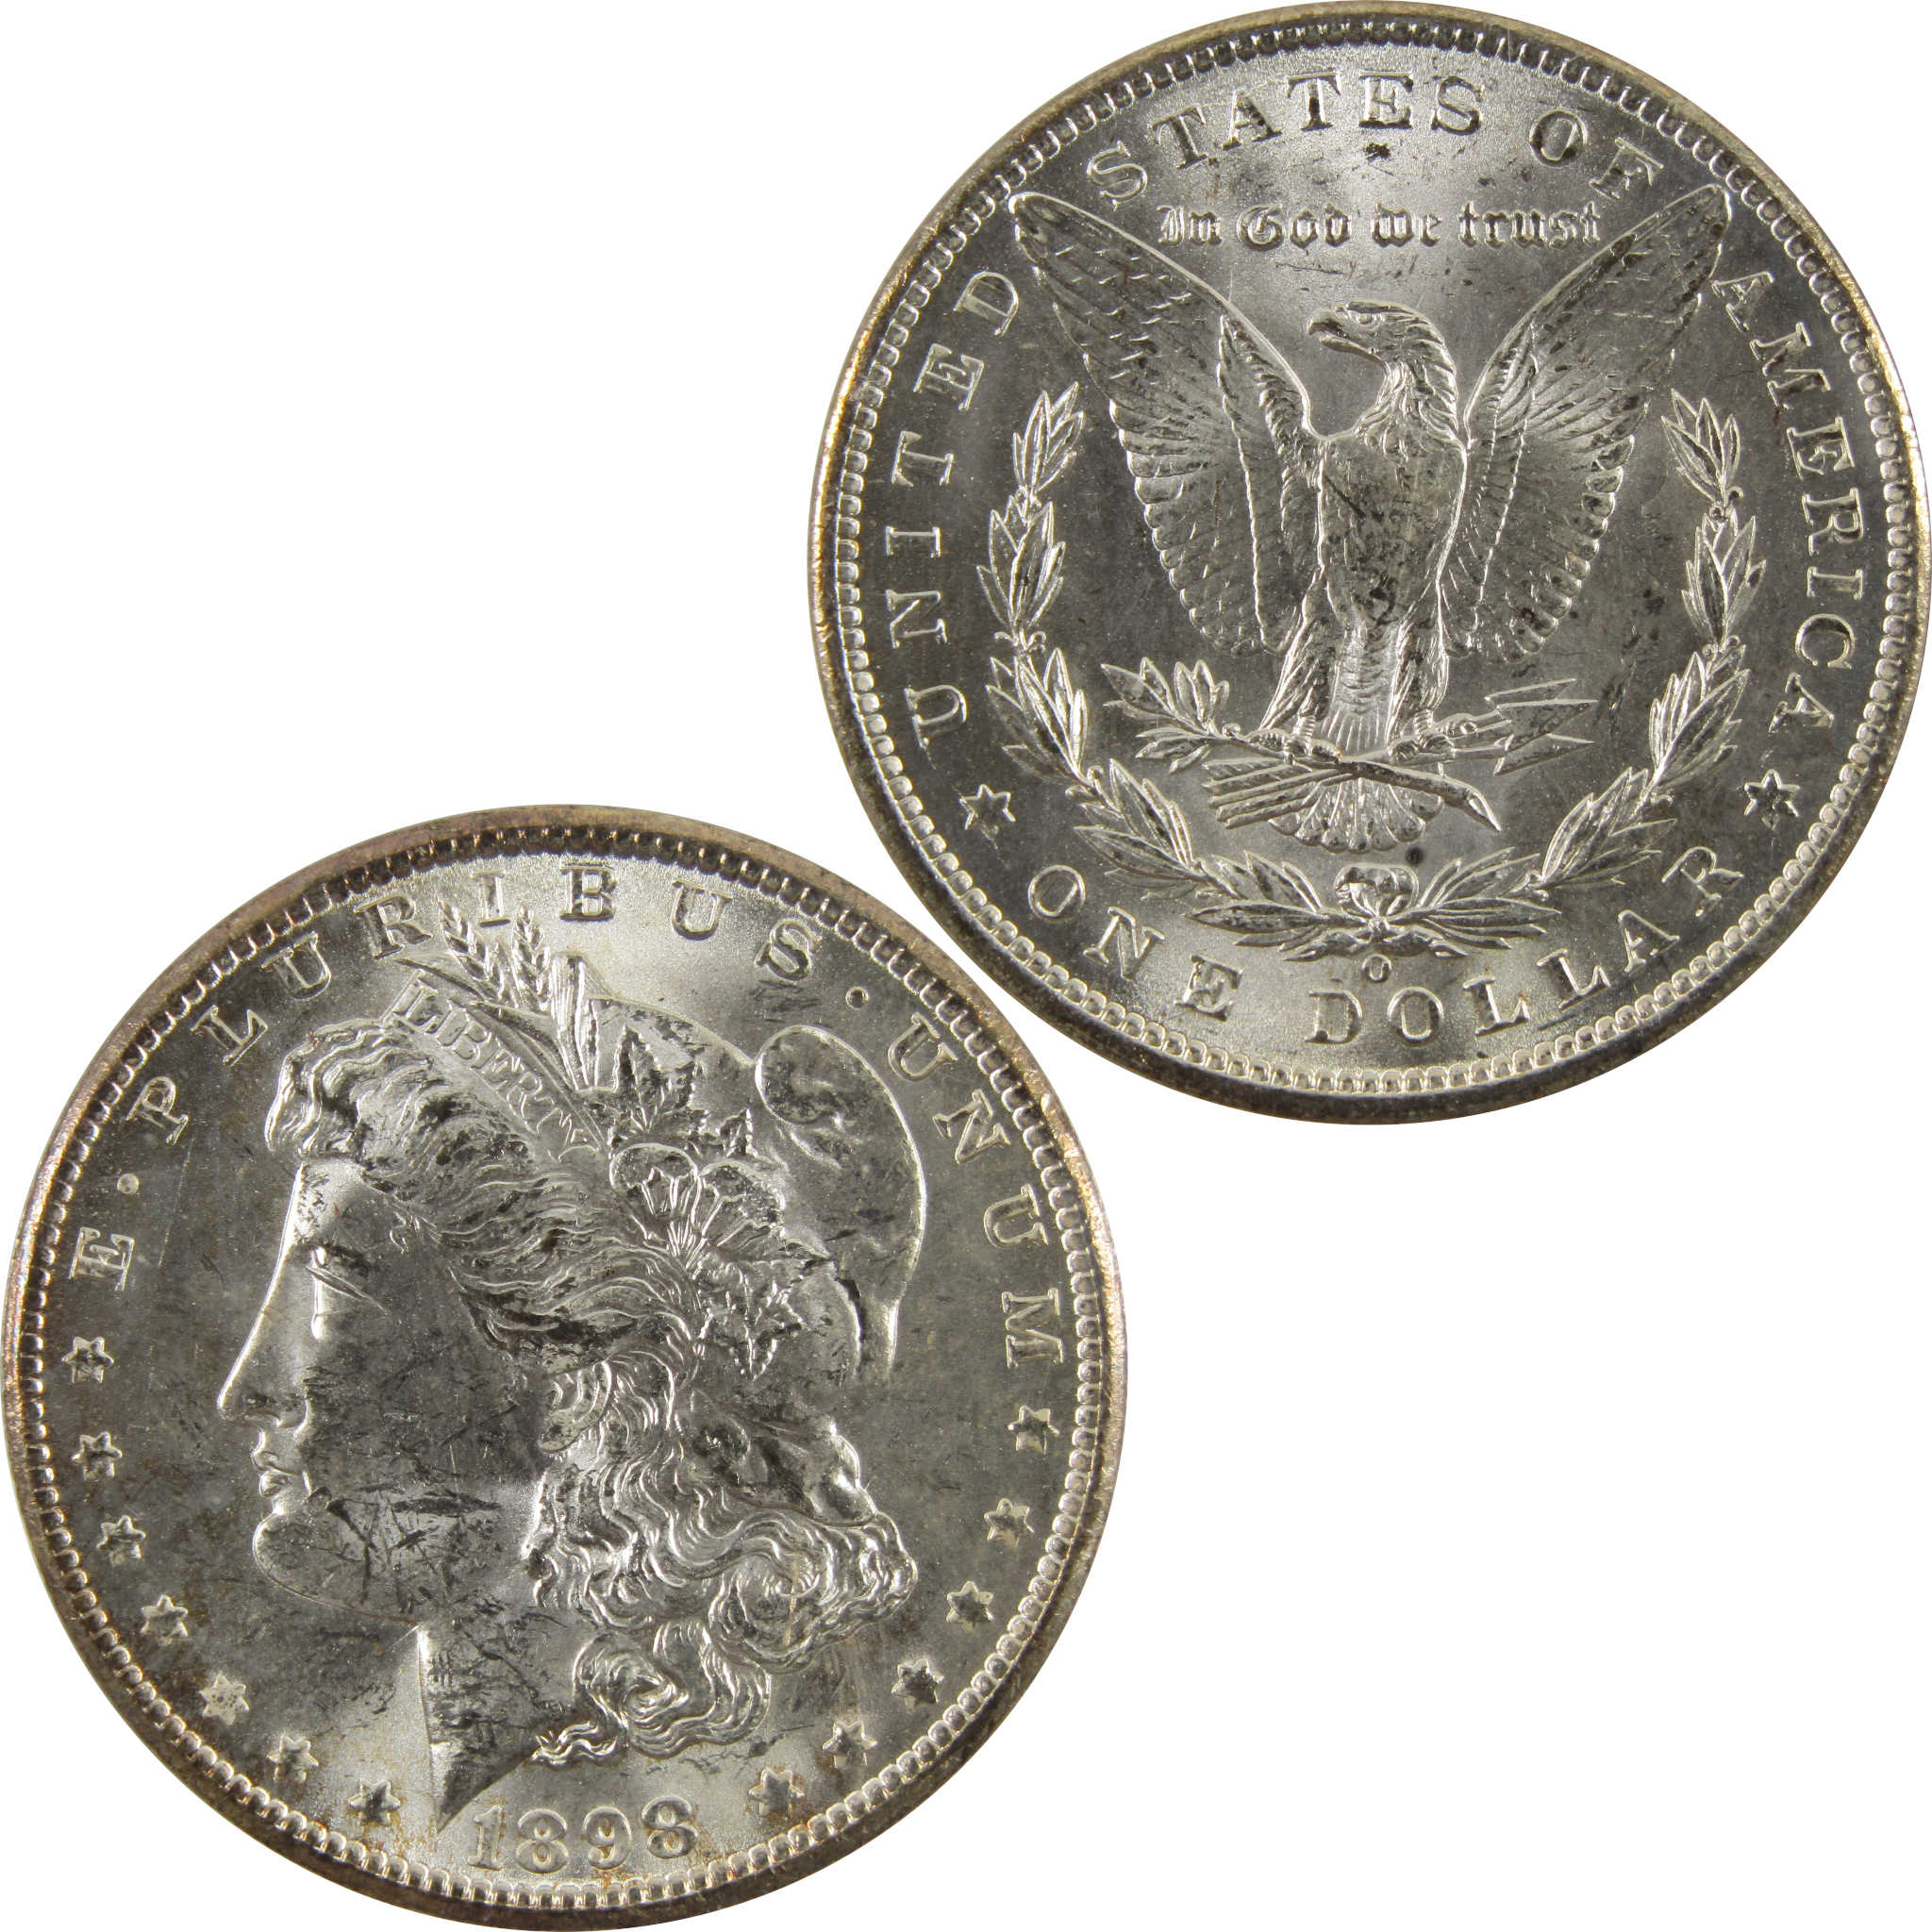 1898 O Morgan Dollar BU Uncirculated 90% Silver $1 Coin SKU:CPC4860 - Morgan coin - Morgan silver dollar - Morgan silver dollar for sale - Profile Coins &amp; Collectibles